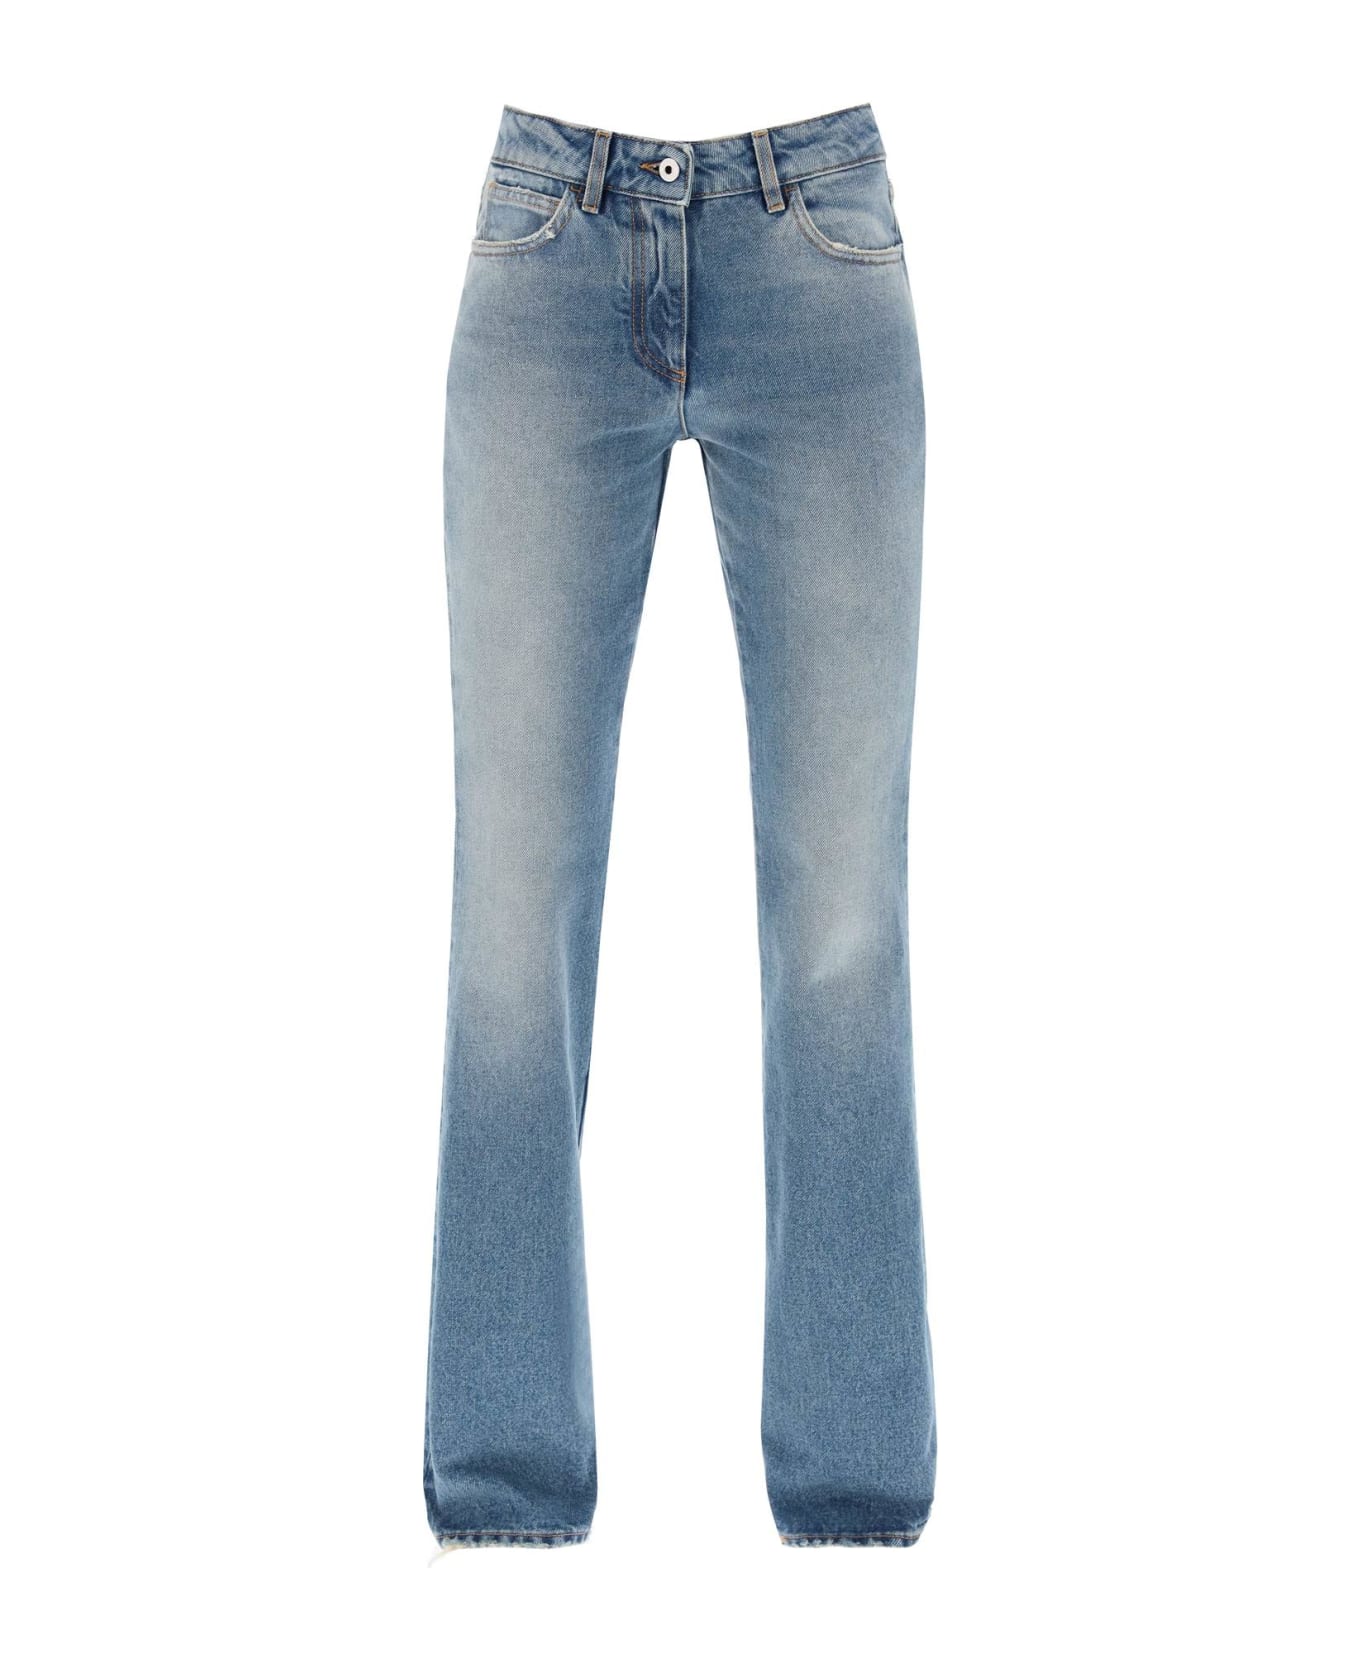 Off-White Bootcut Jeans - BLUE NO COLOR (Light blue)